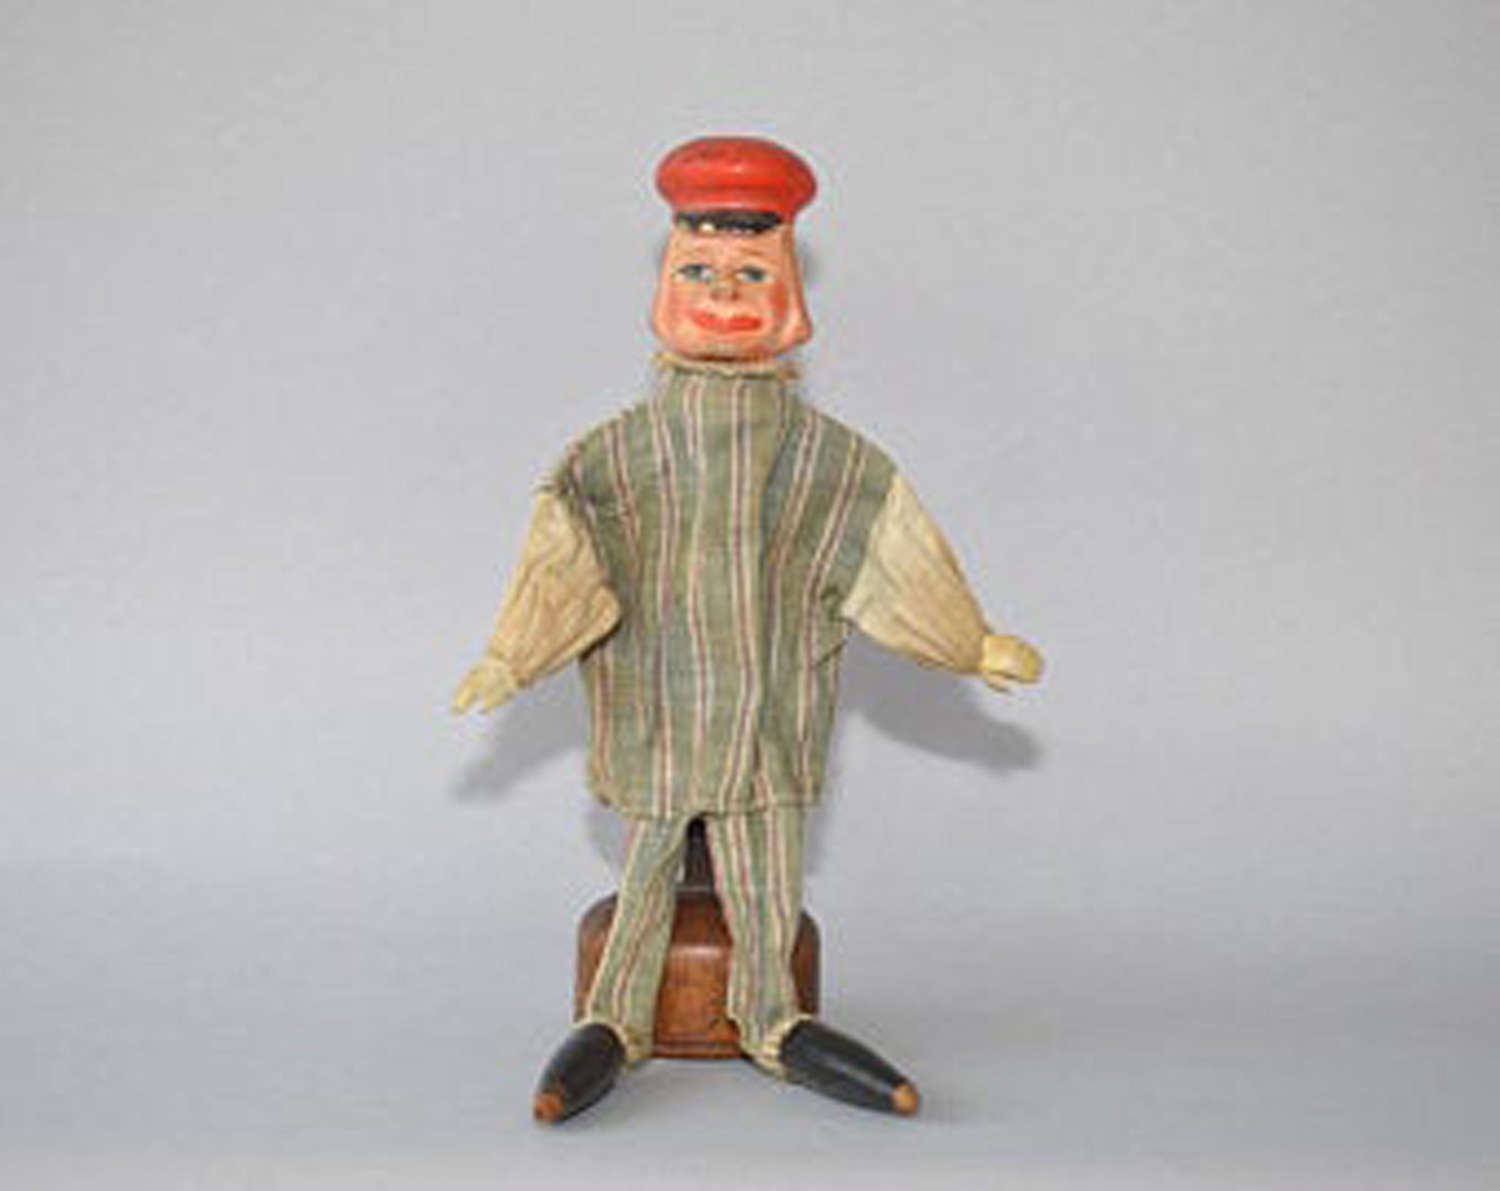 Antique Mr Punch glove puppet